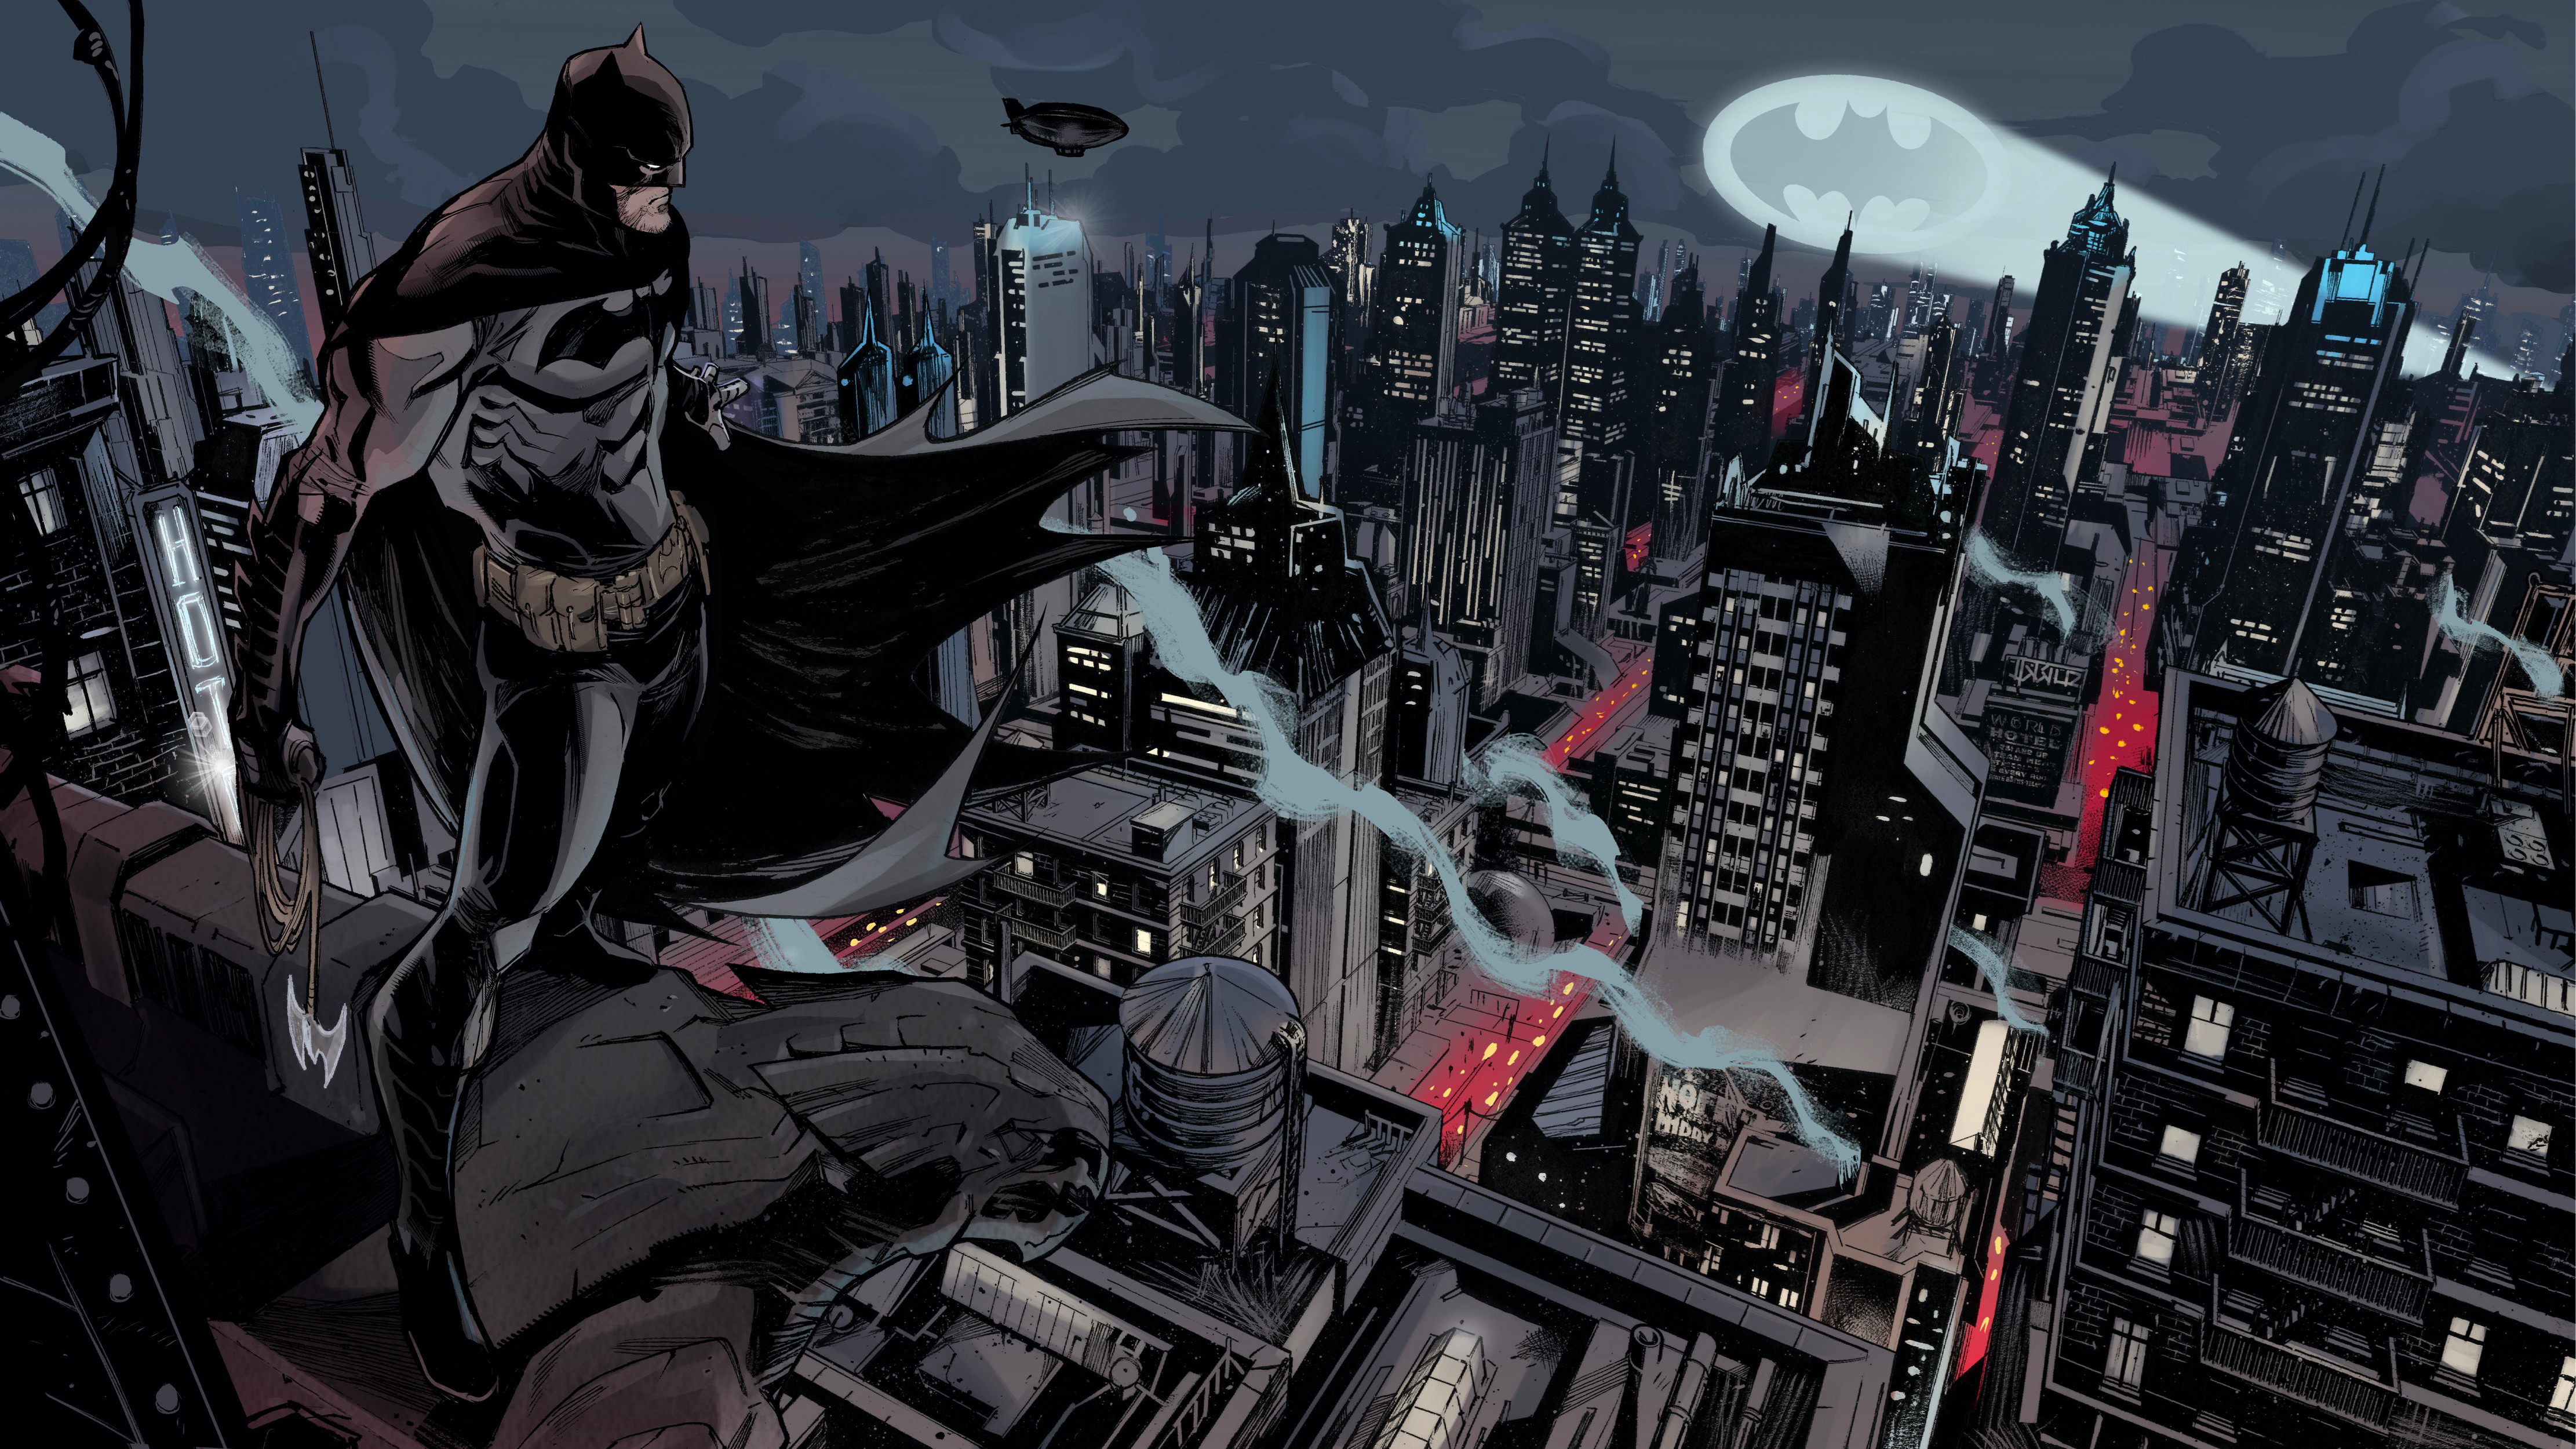 Batman Gotham City Dc Comics 4k, HD Superheroes, 4k Wallpapers, Images